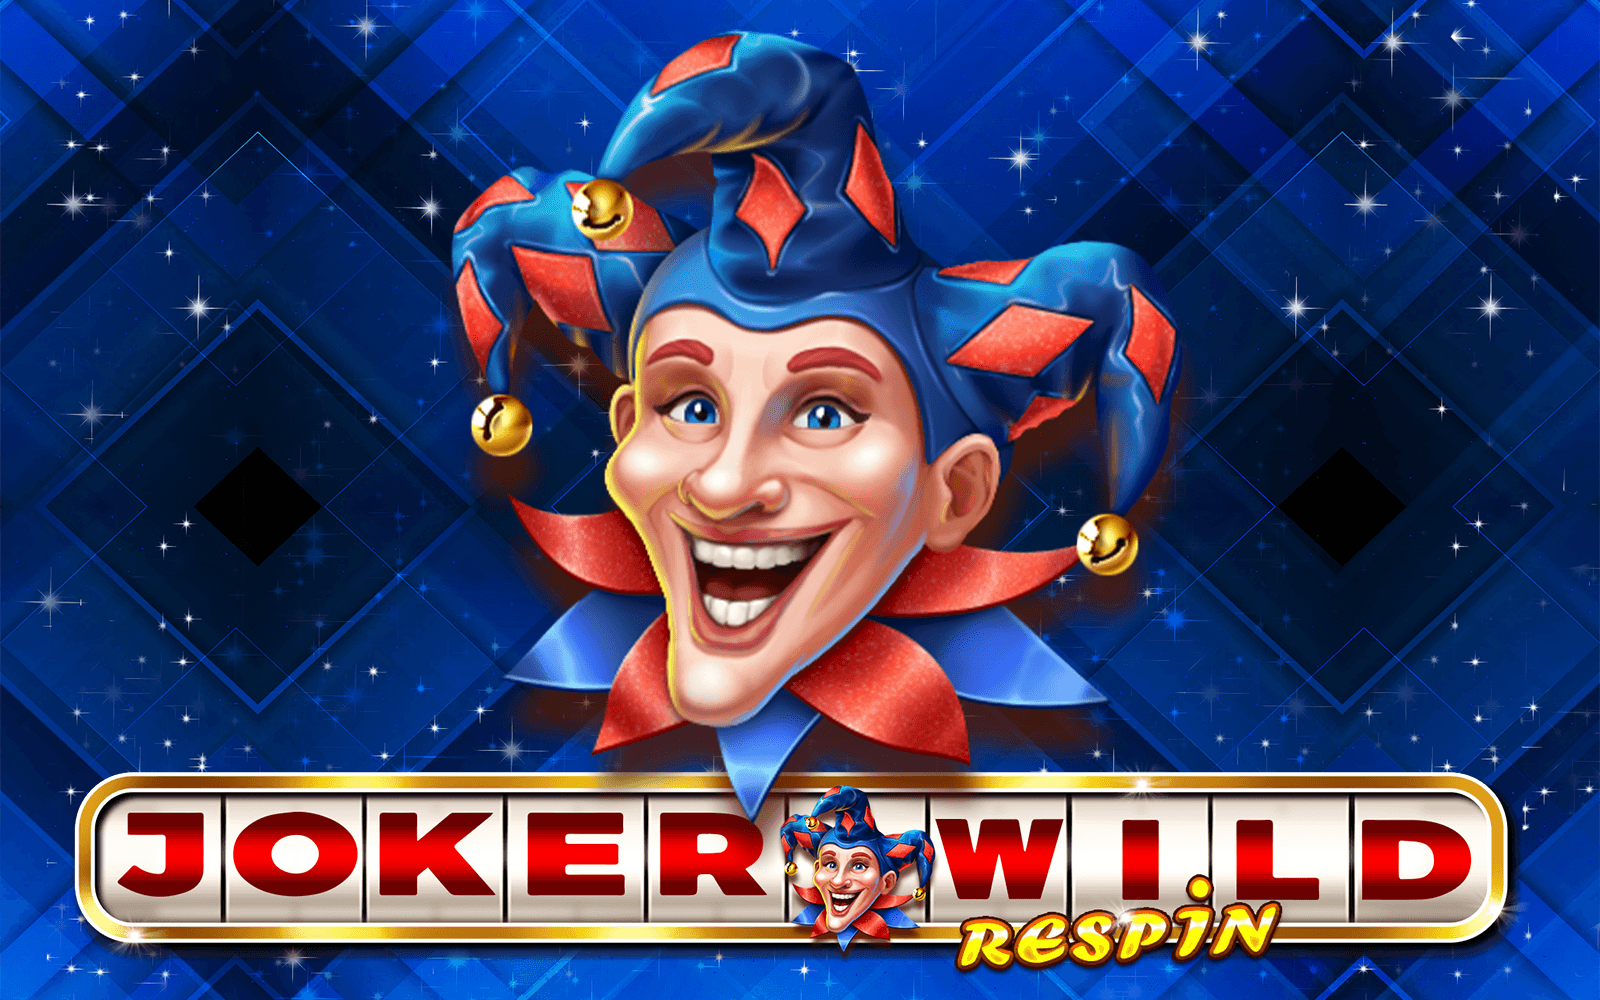 Play Joker Wild Respin on Starcasino.be online casino